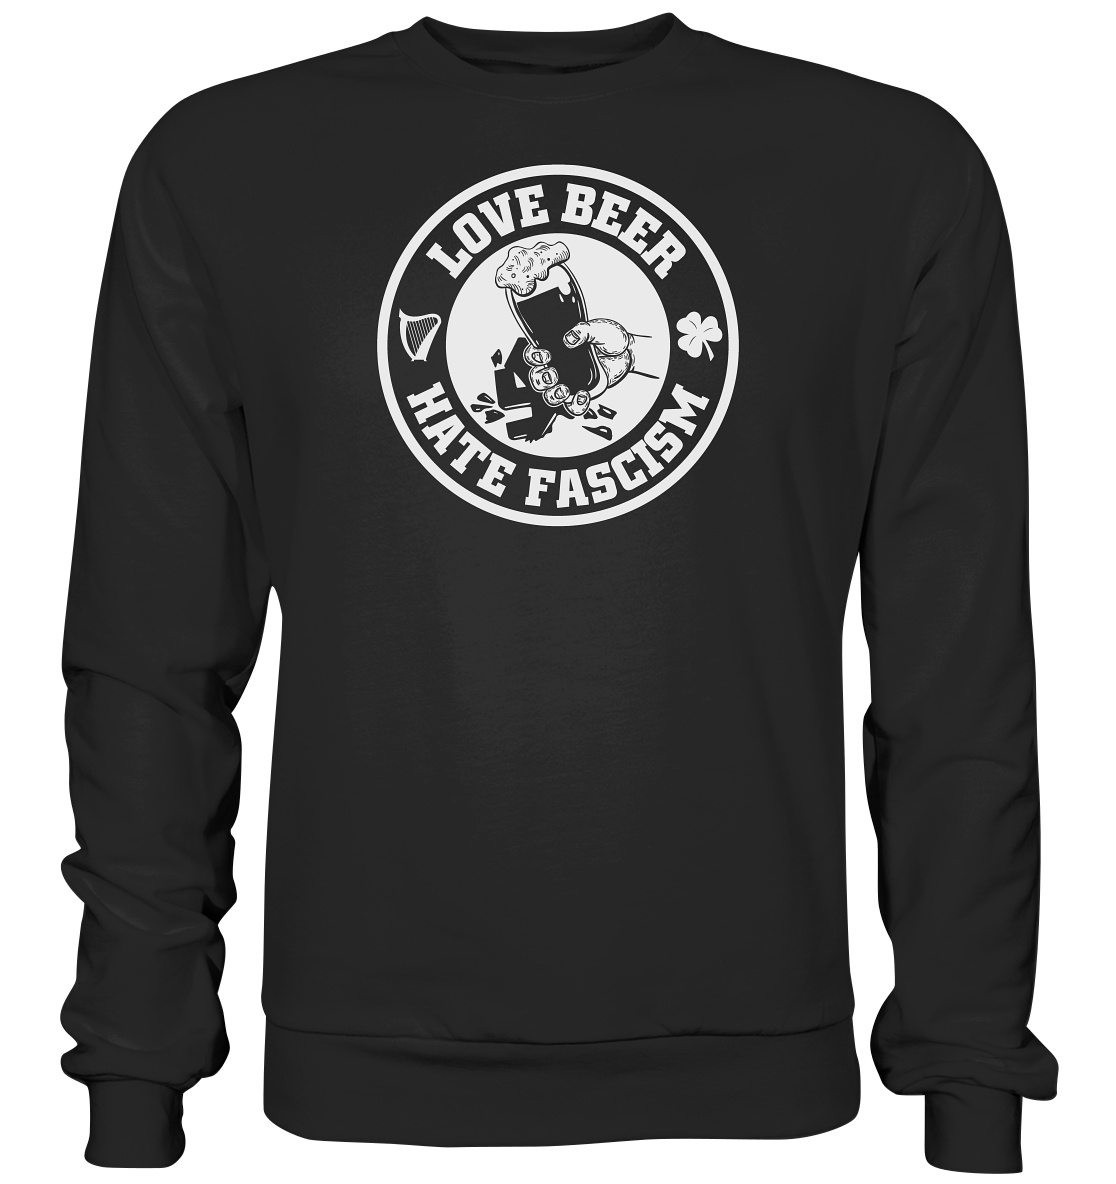 Love Beer - Hate Fascism - Premium Sweatshirt